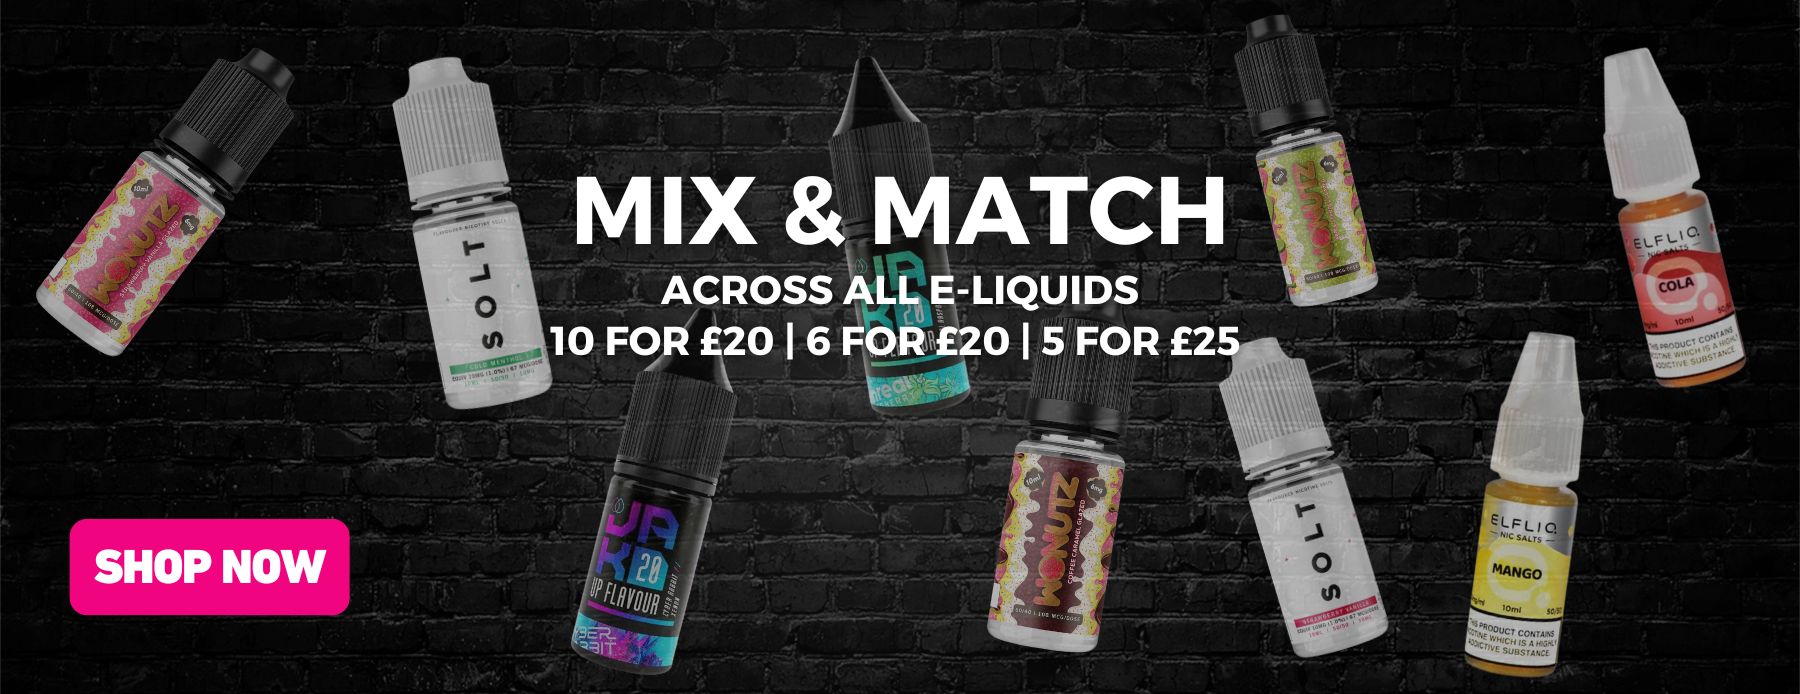 Mix and match e-liquid offer